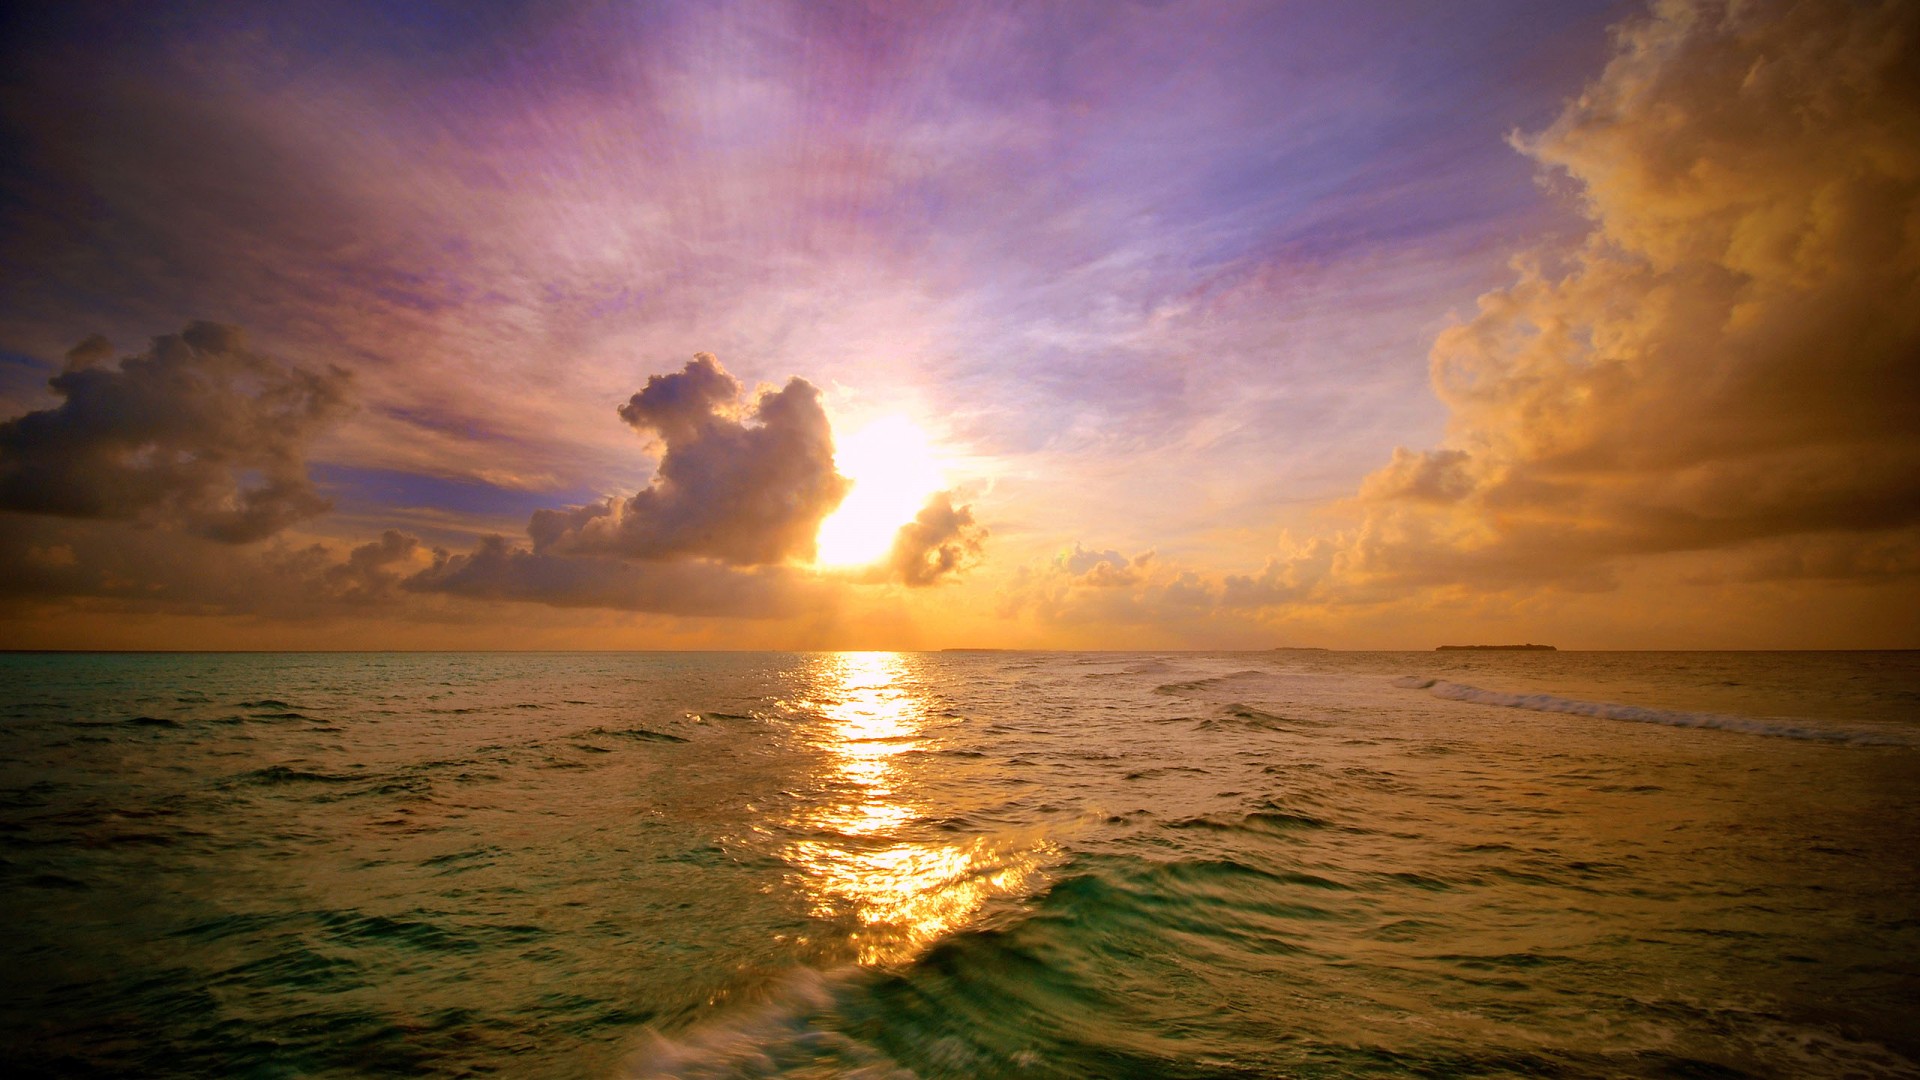 夕阳下的大海图片素材 高清大海夕阳壁纸(4)